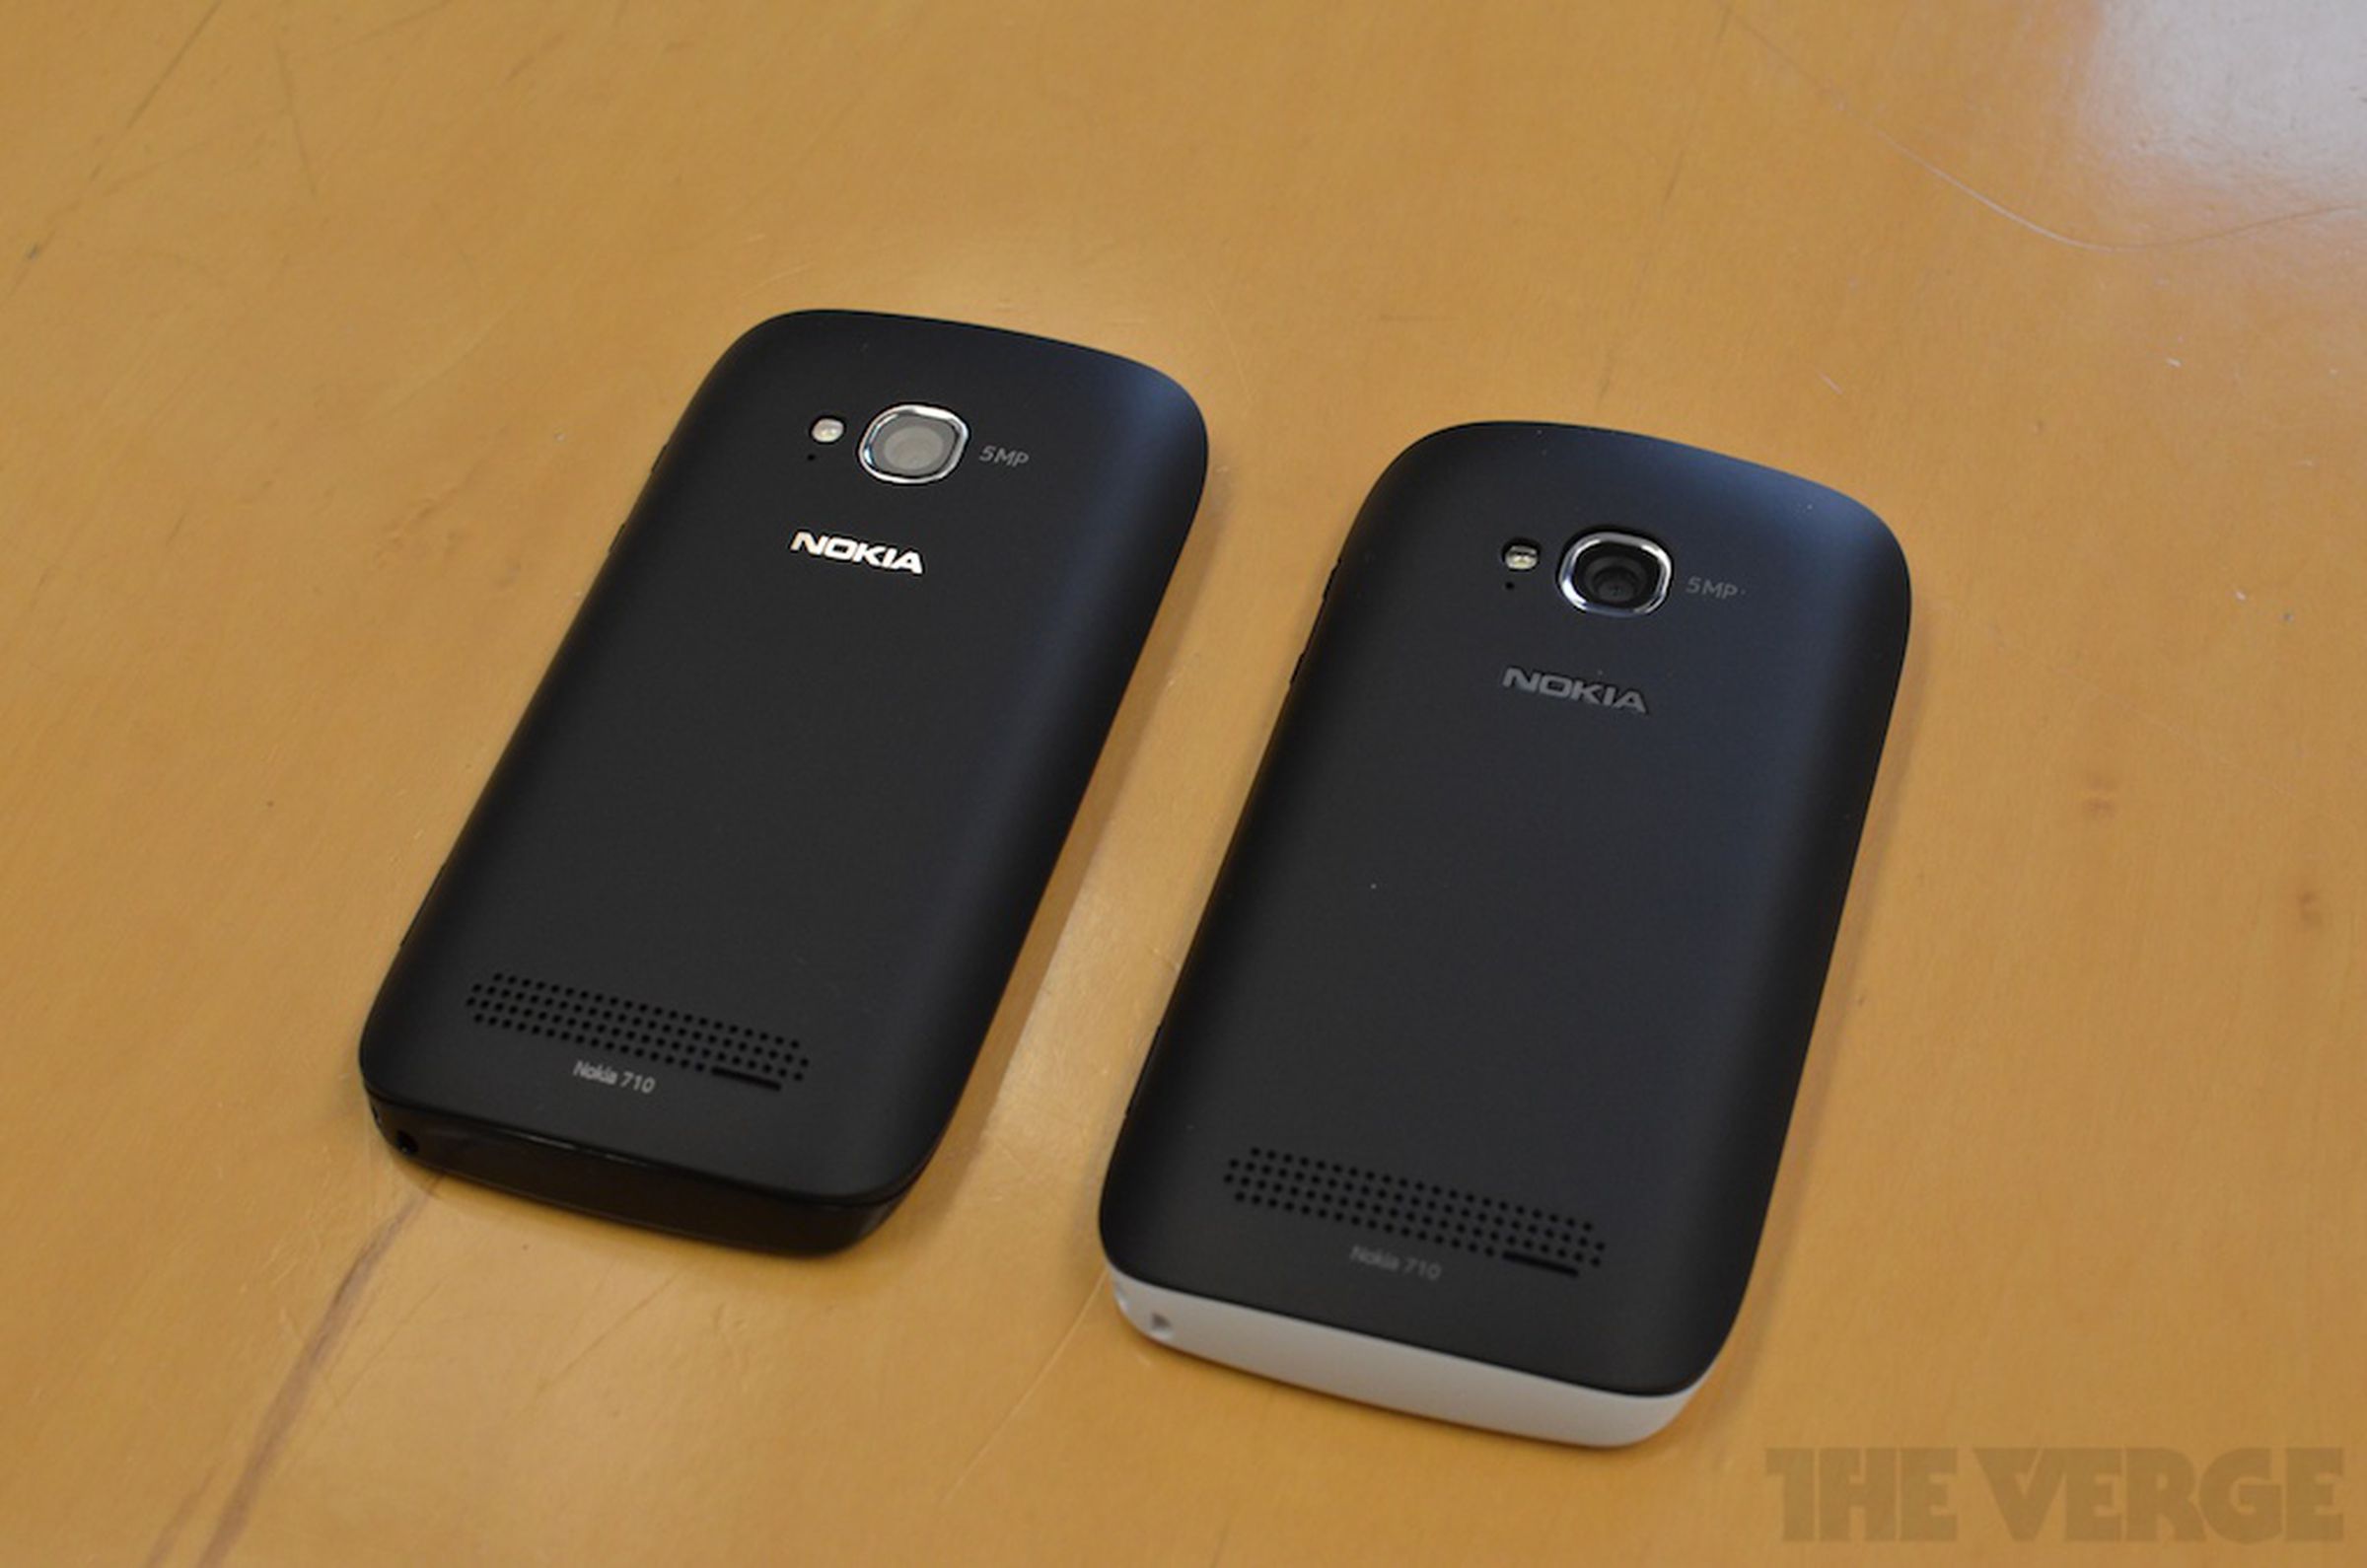 Nokia Lumia 710 for T-Mobile photos